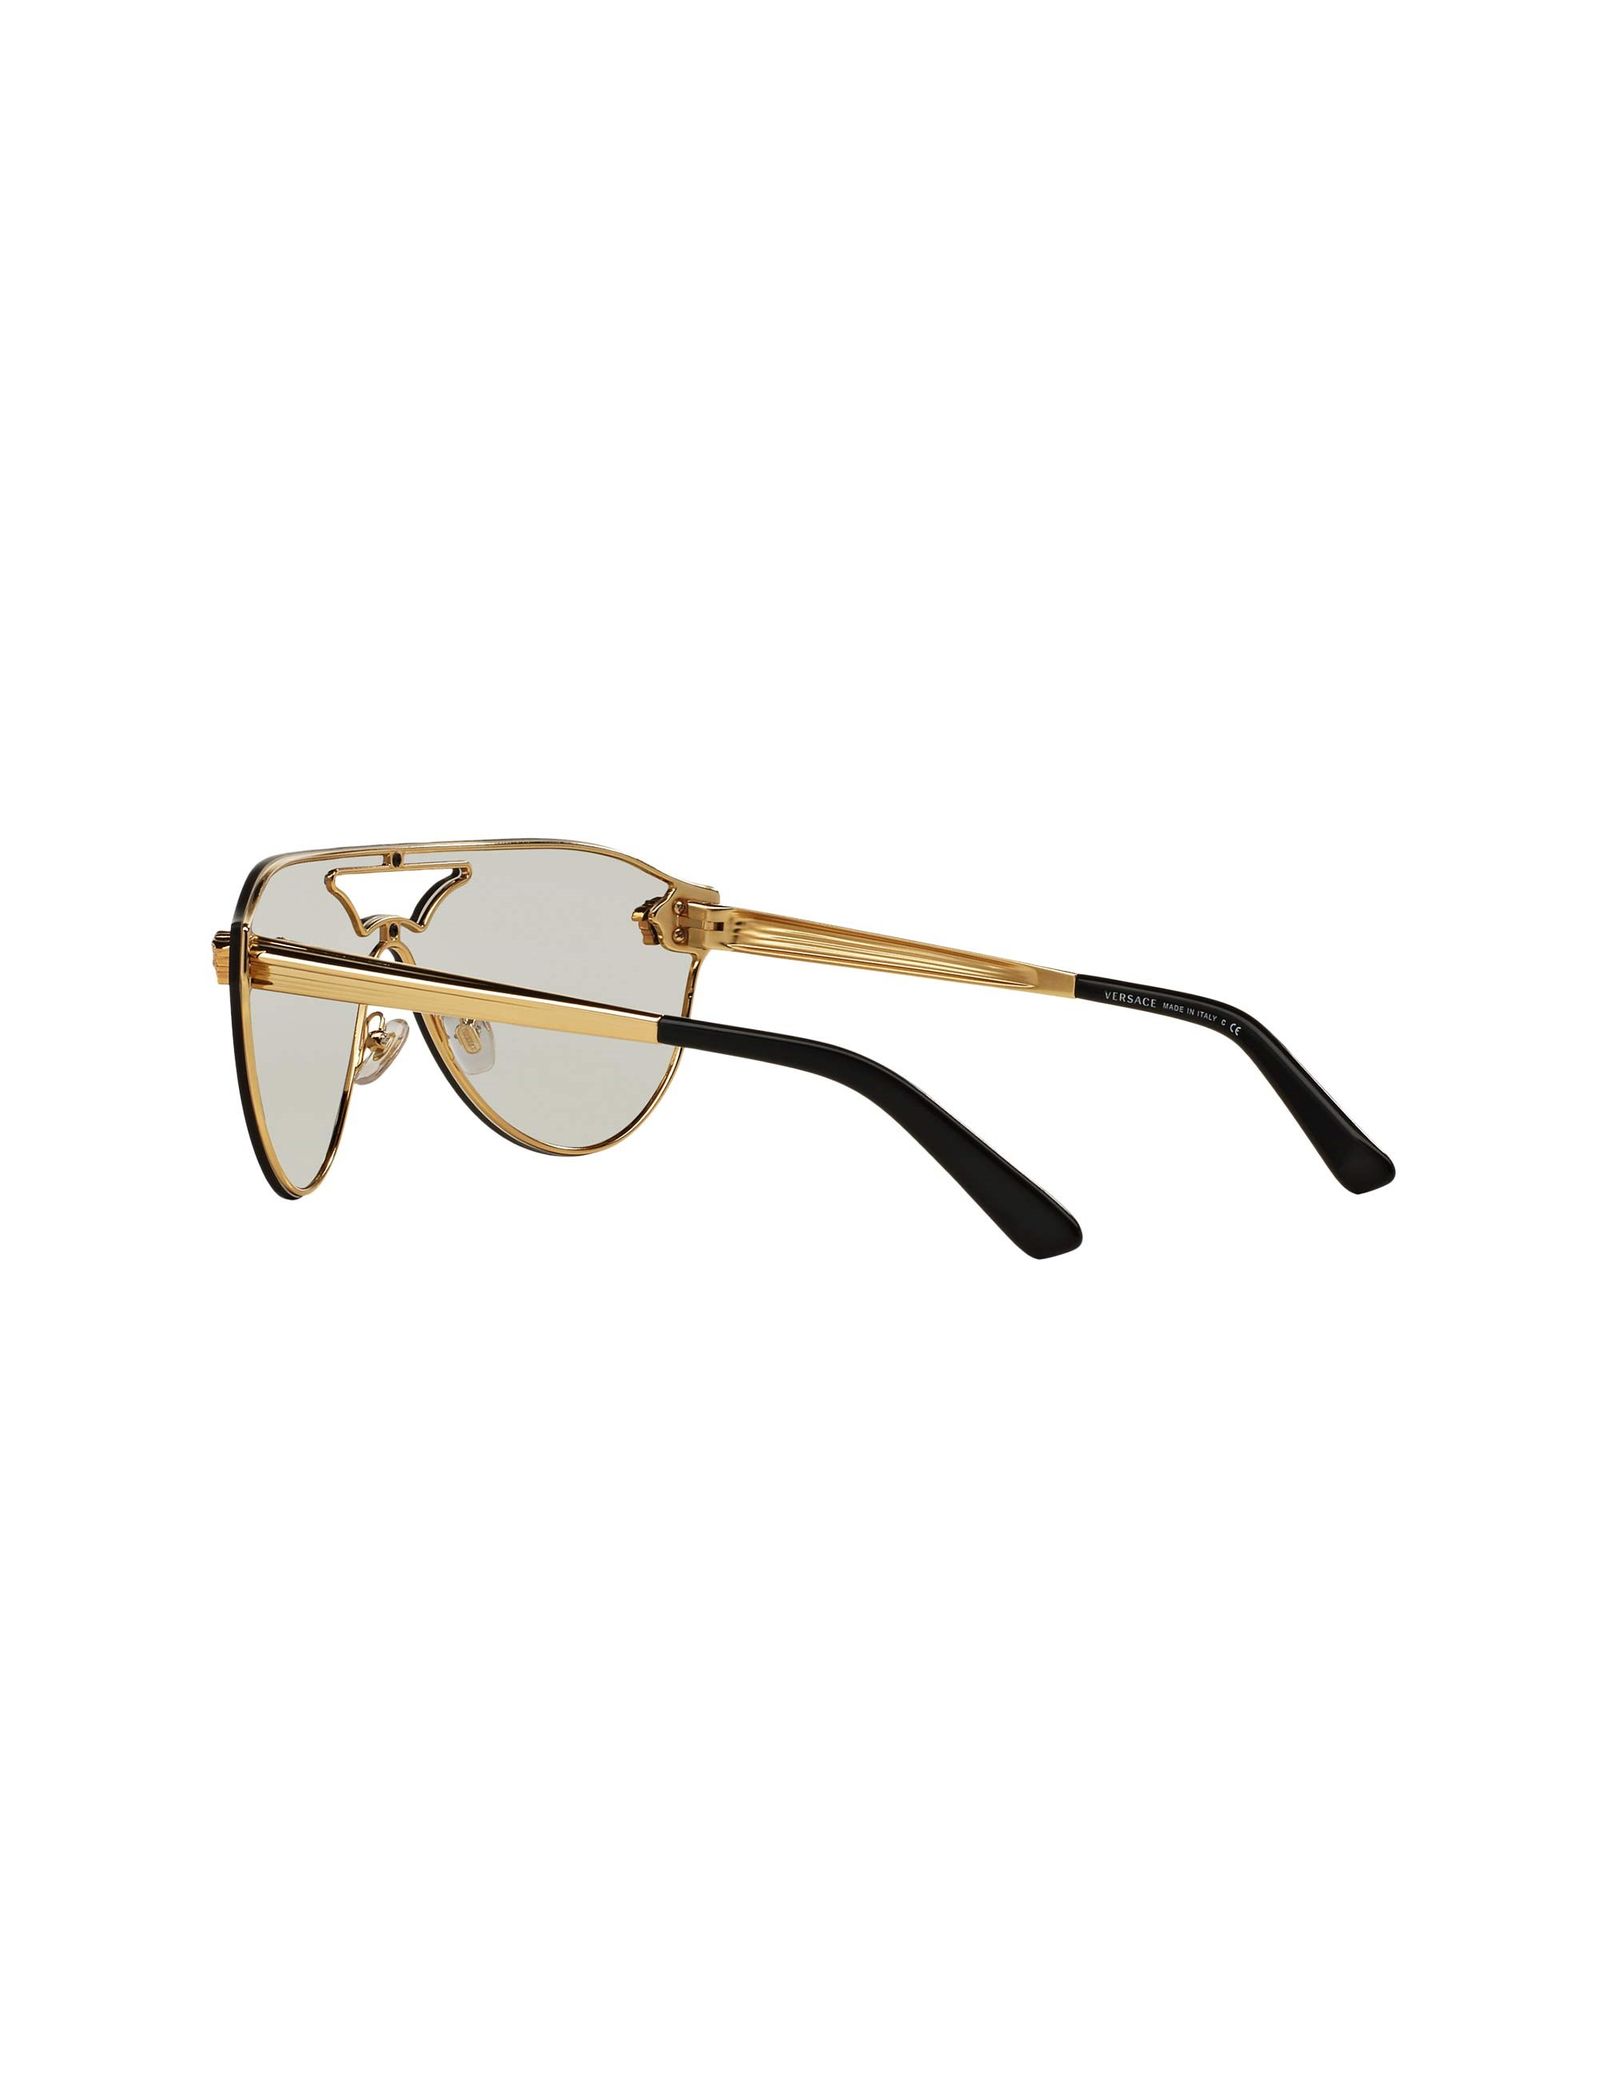 عینک آفتابی خلبانی زنانه - ورساچه - طلايي - 6